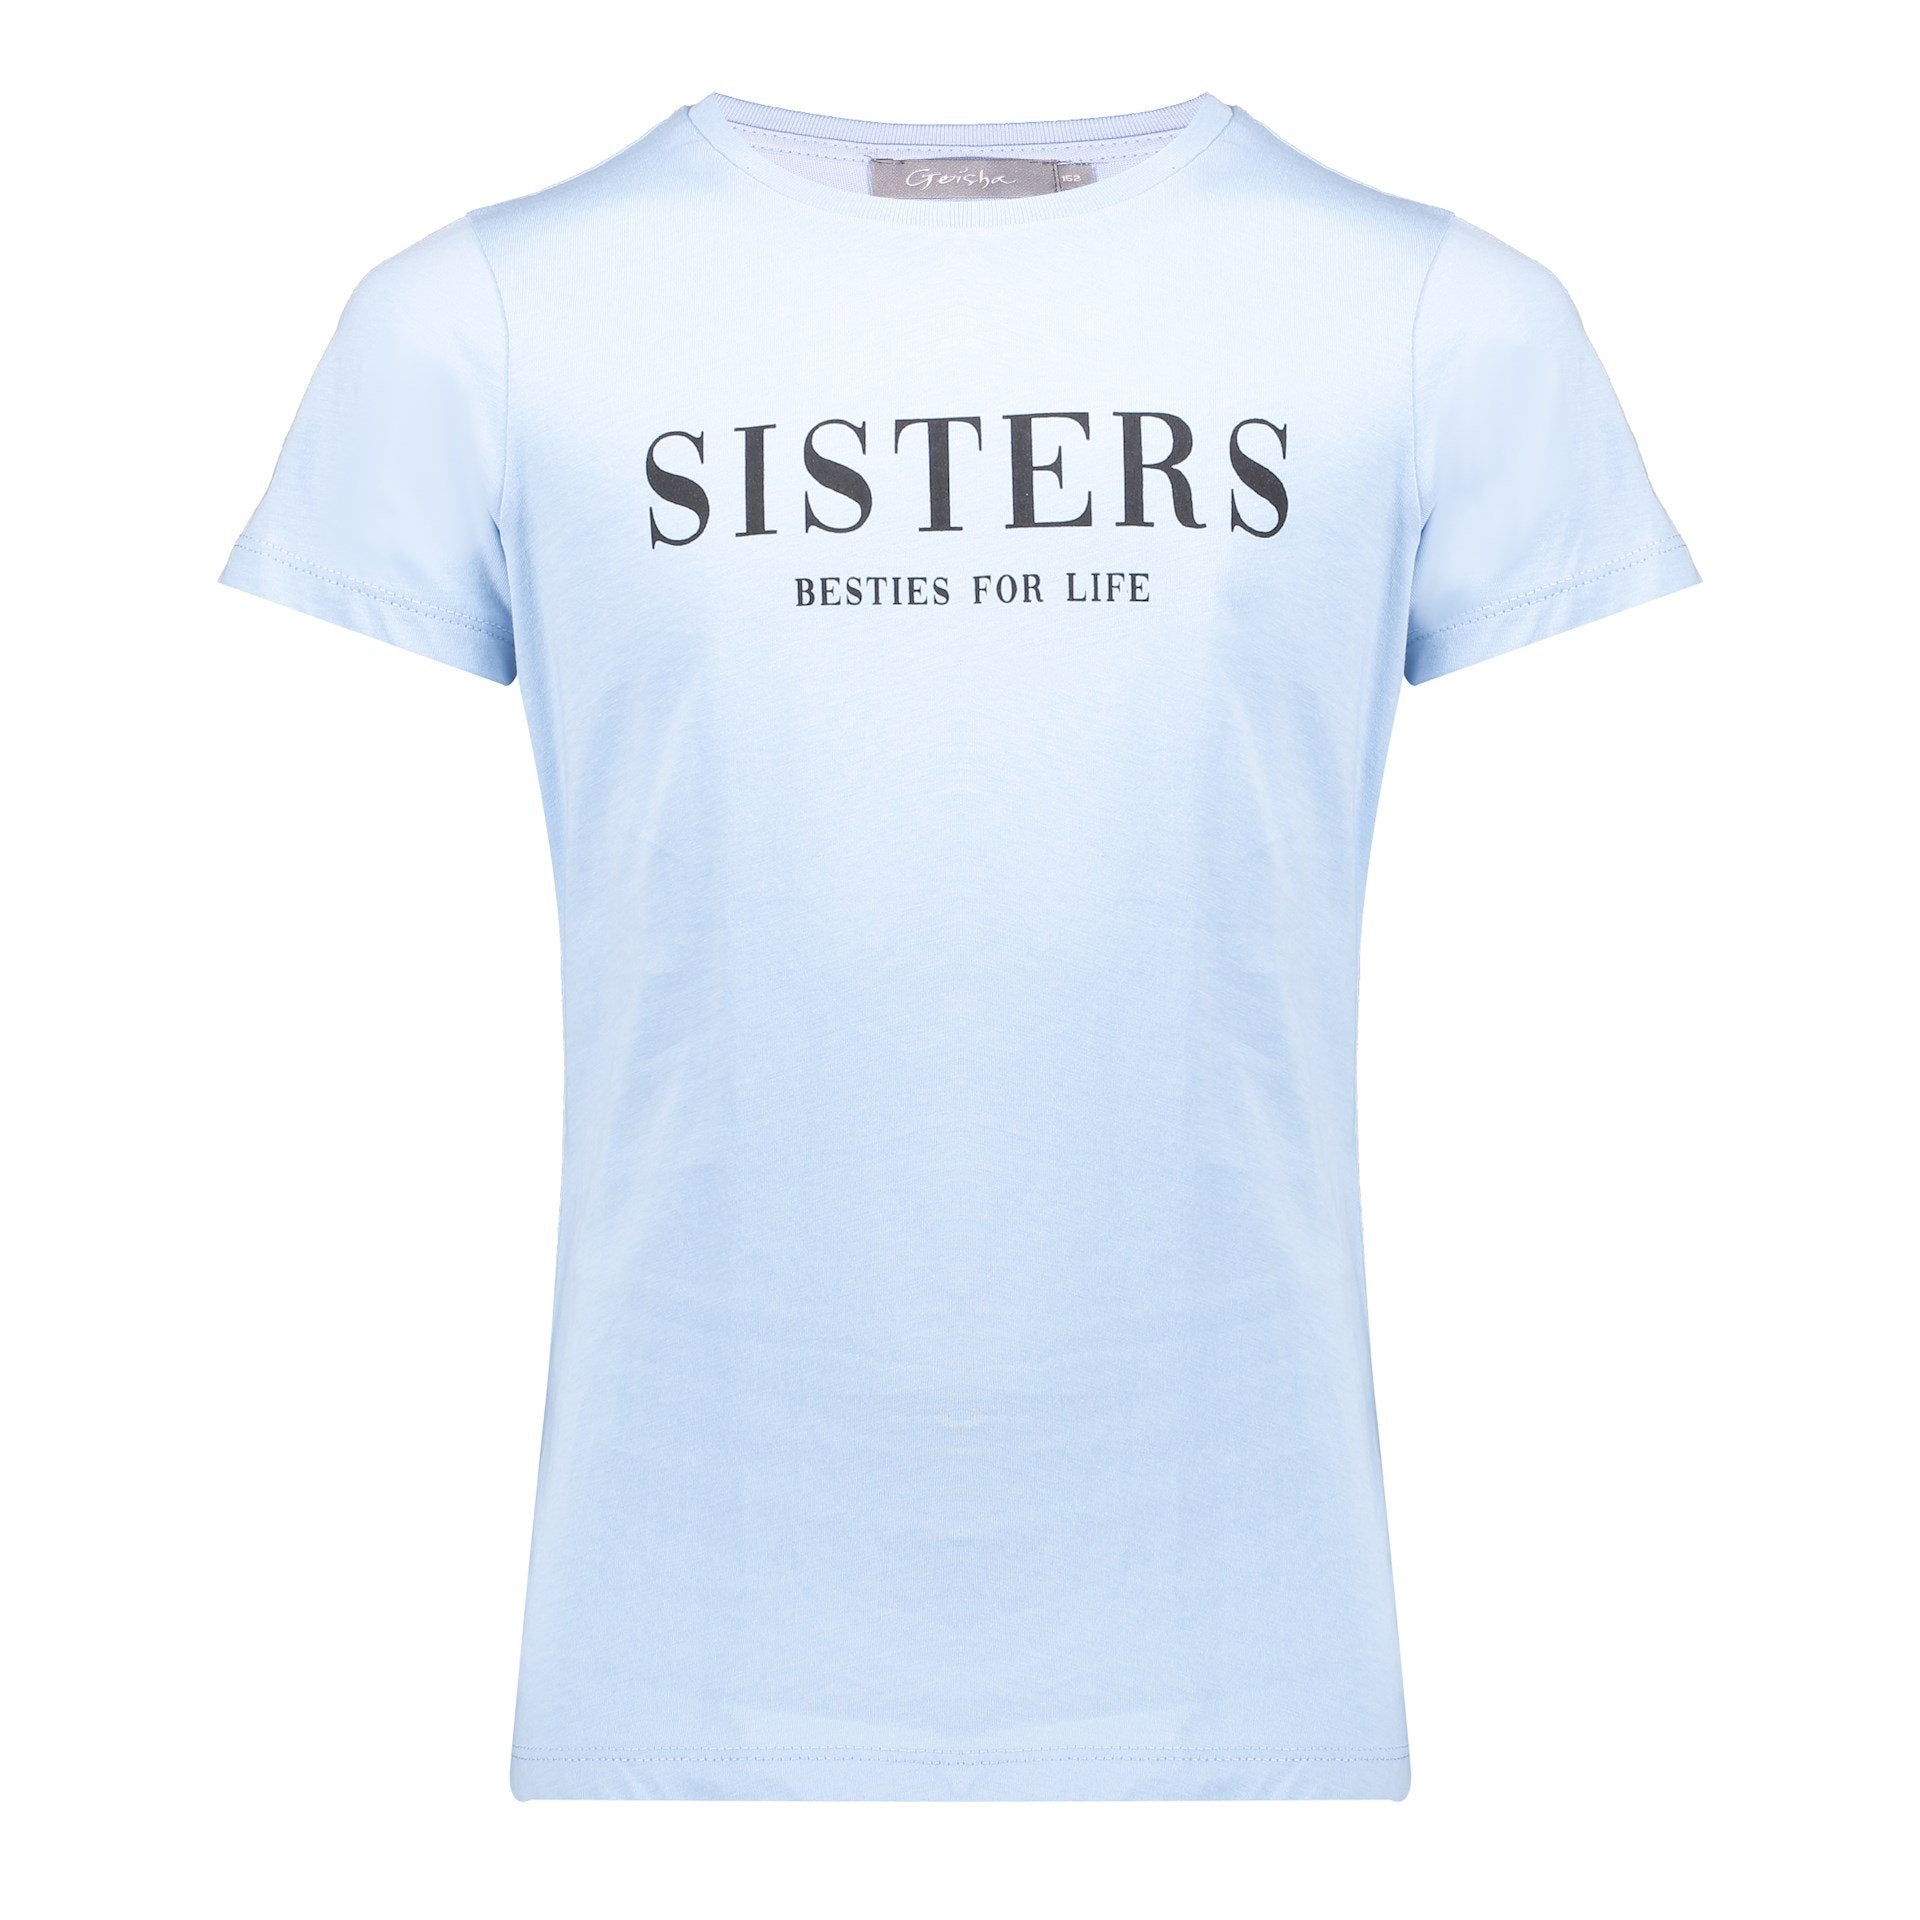 Meisjes T-shirt "sisters" s/s van Geisha in de kleur Light blue in maat 176.